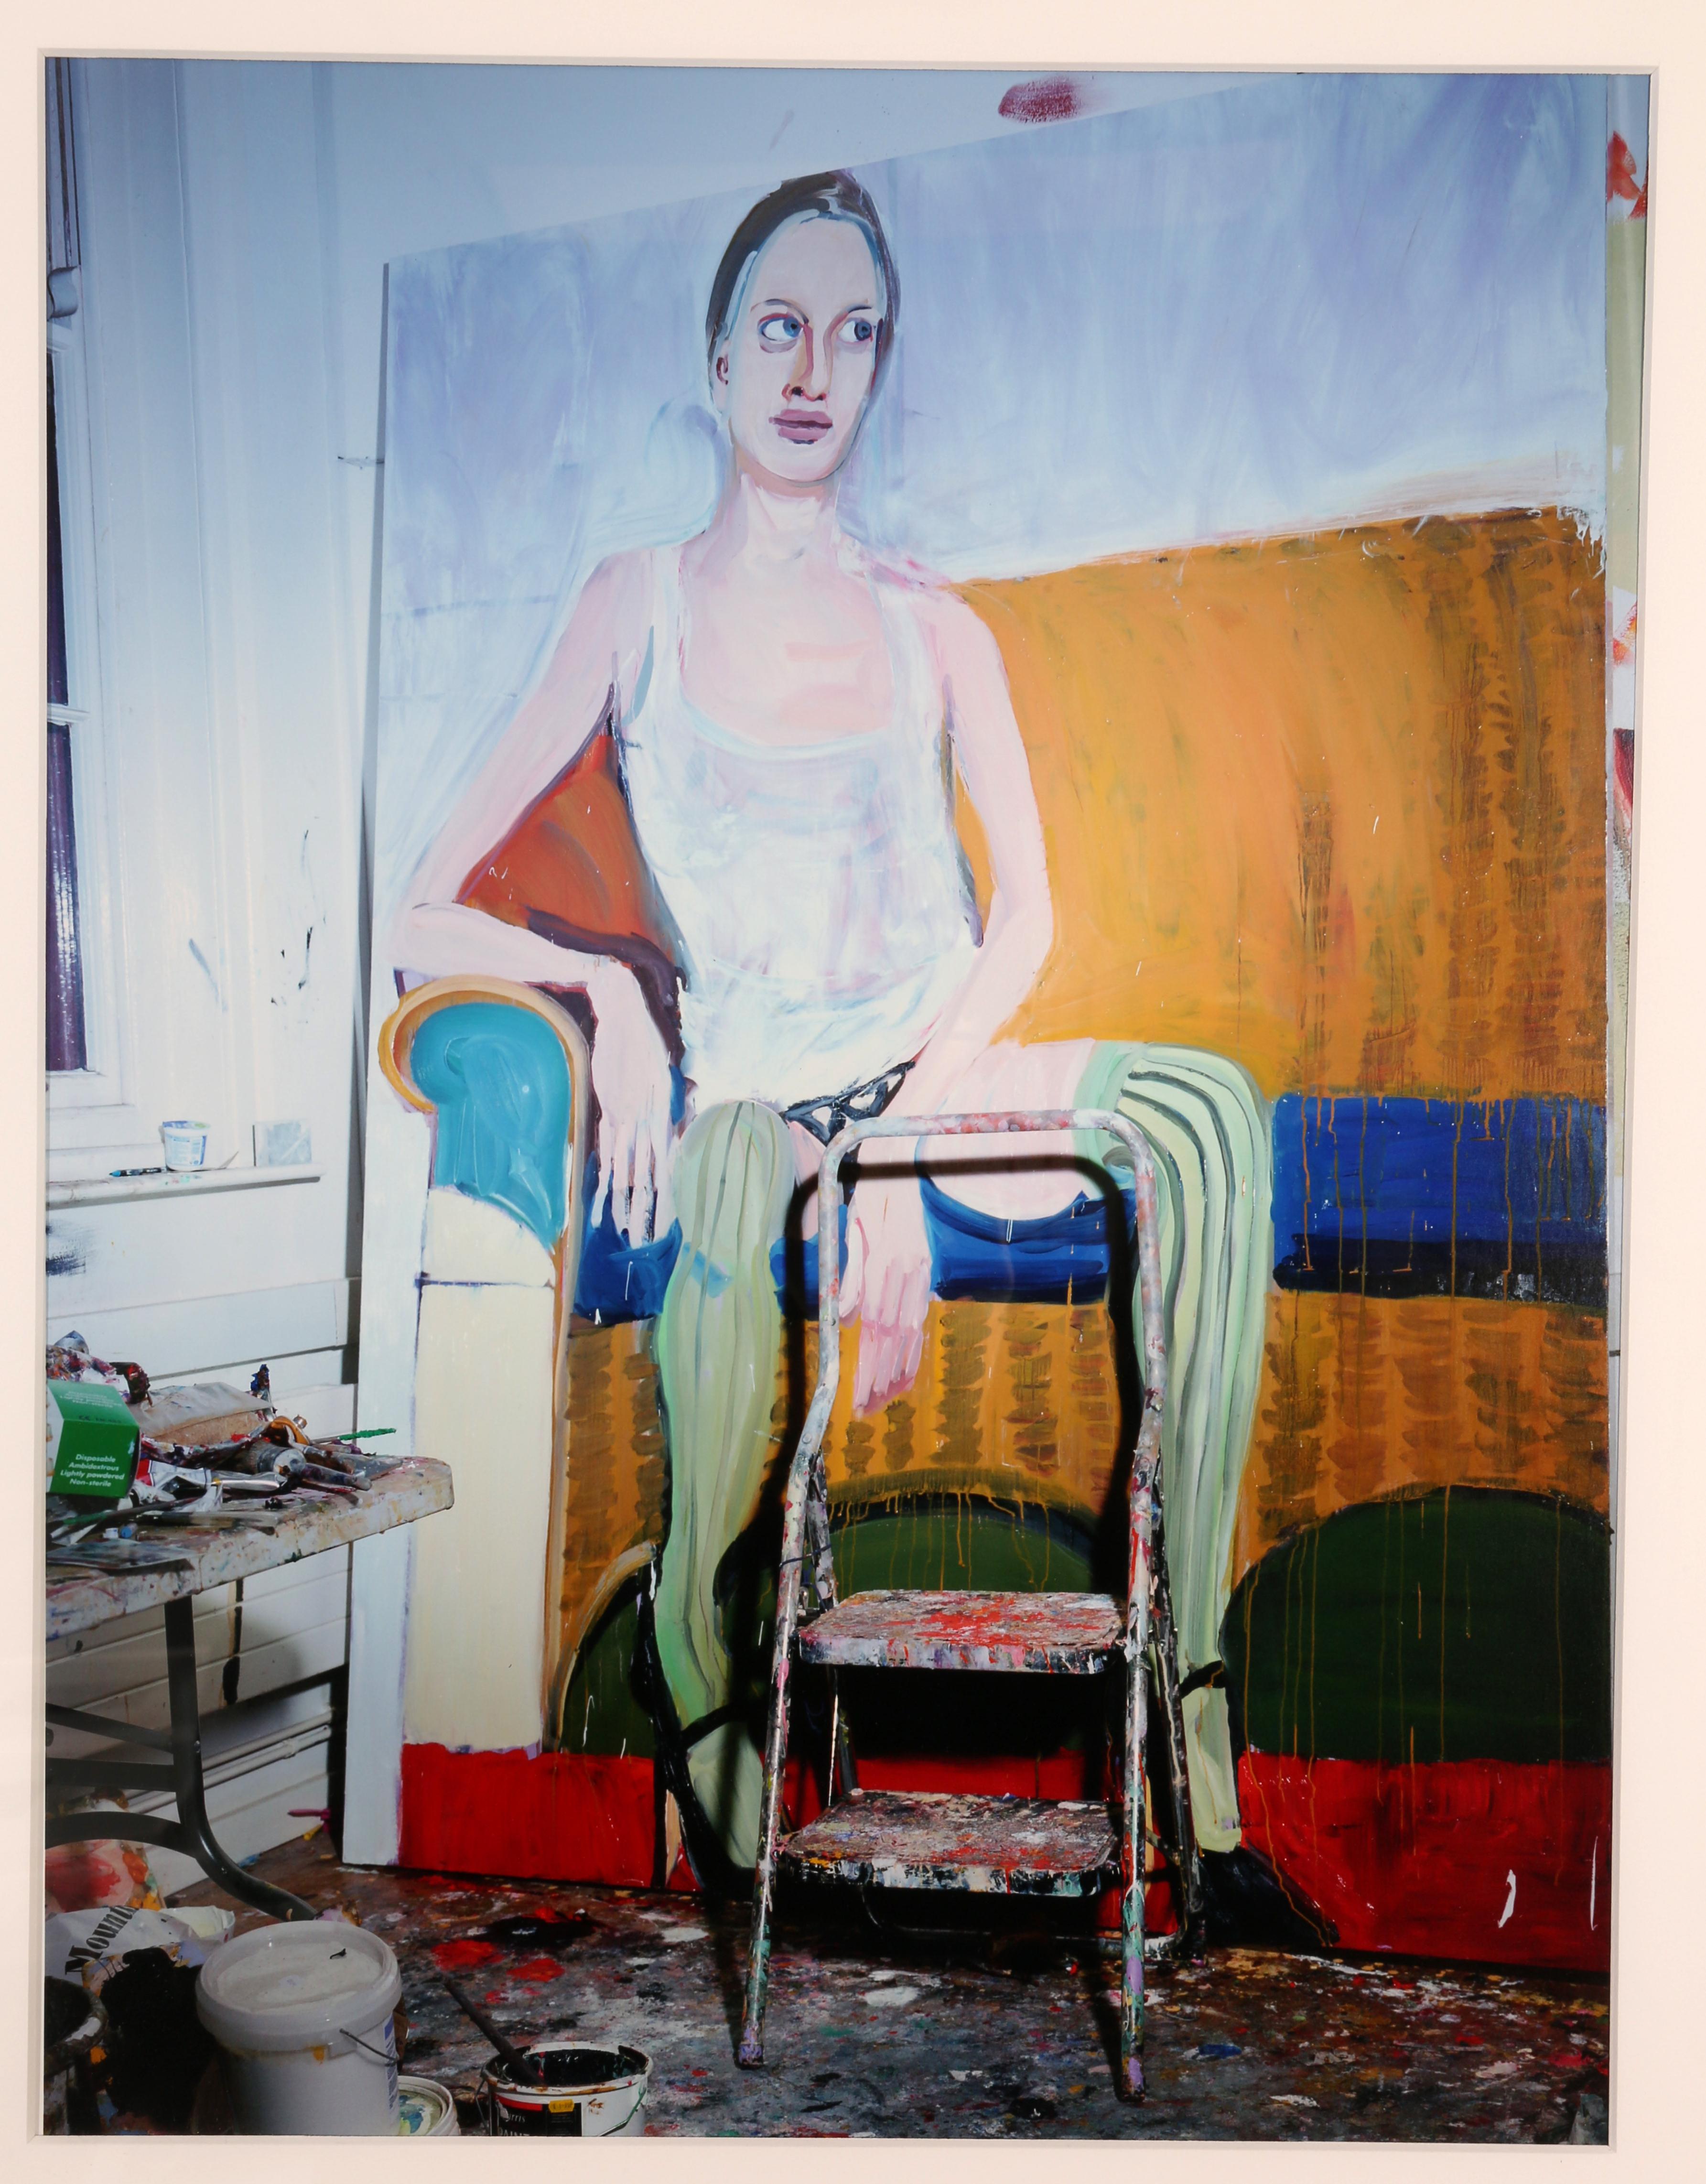 Kristen, Peinture de Chantal Joffe (de la série Kristen)  - Gris Portrait Photograph par Miles Aldridge